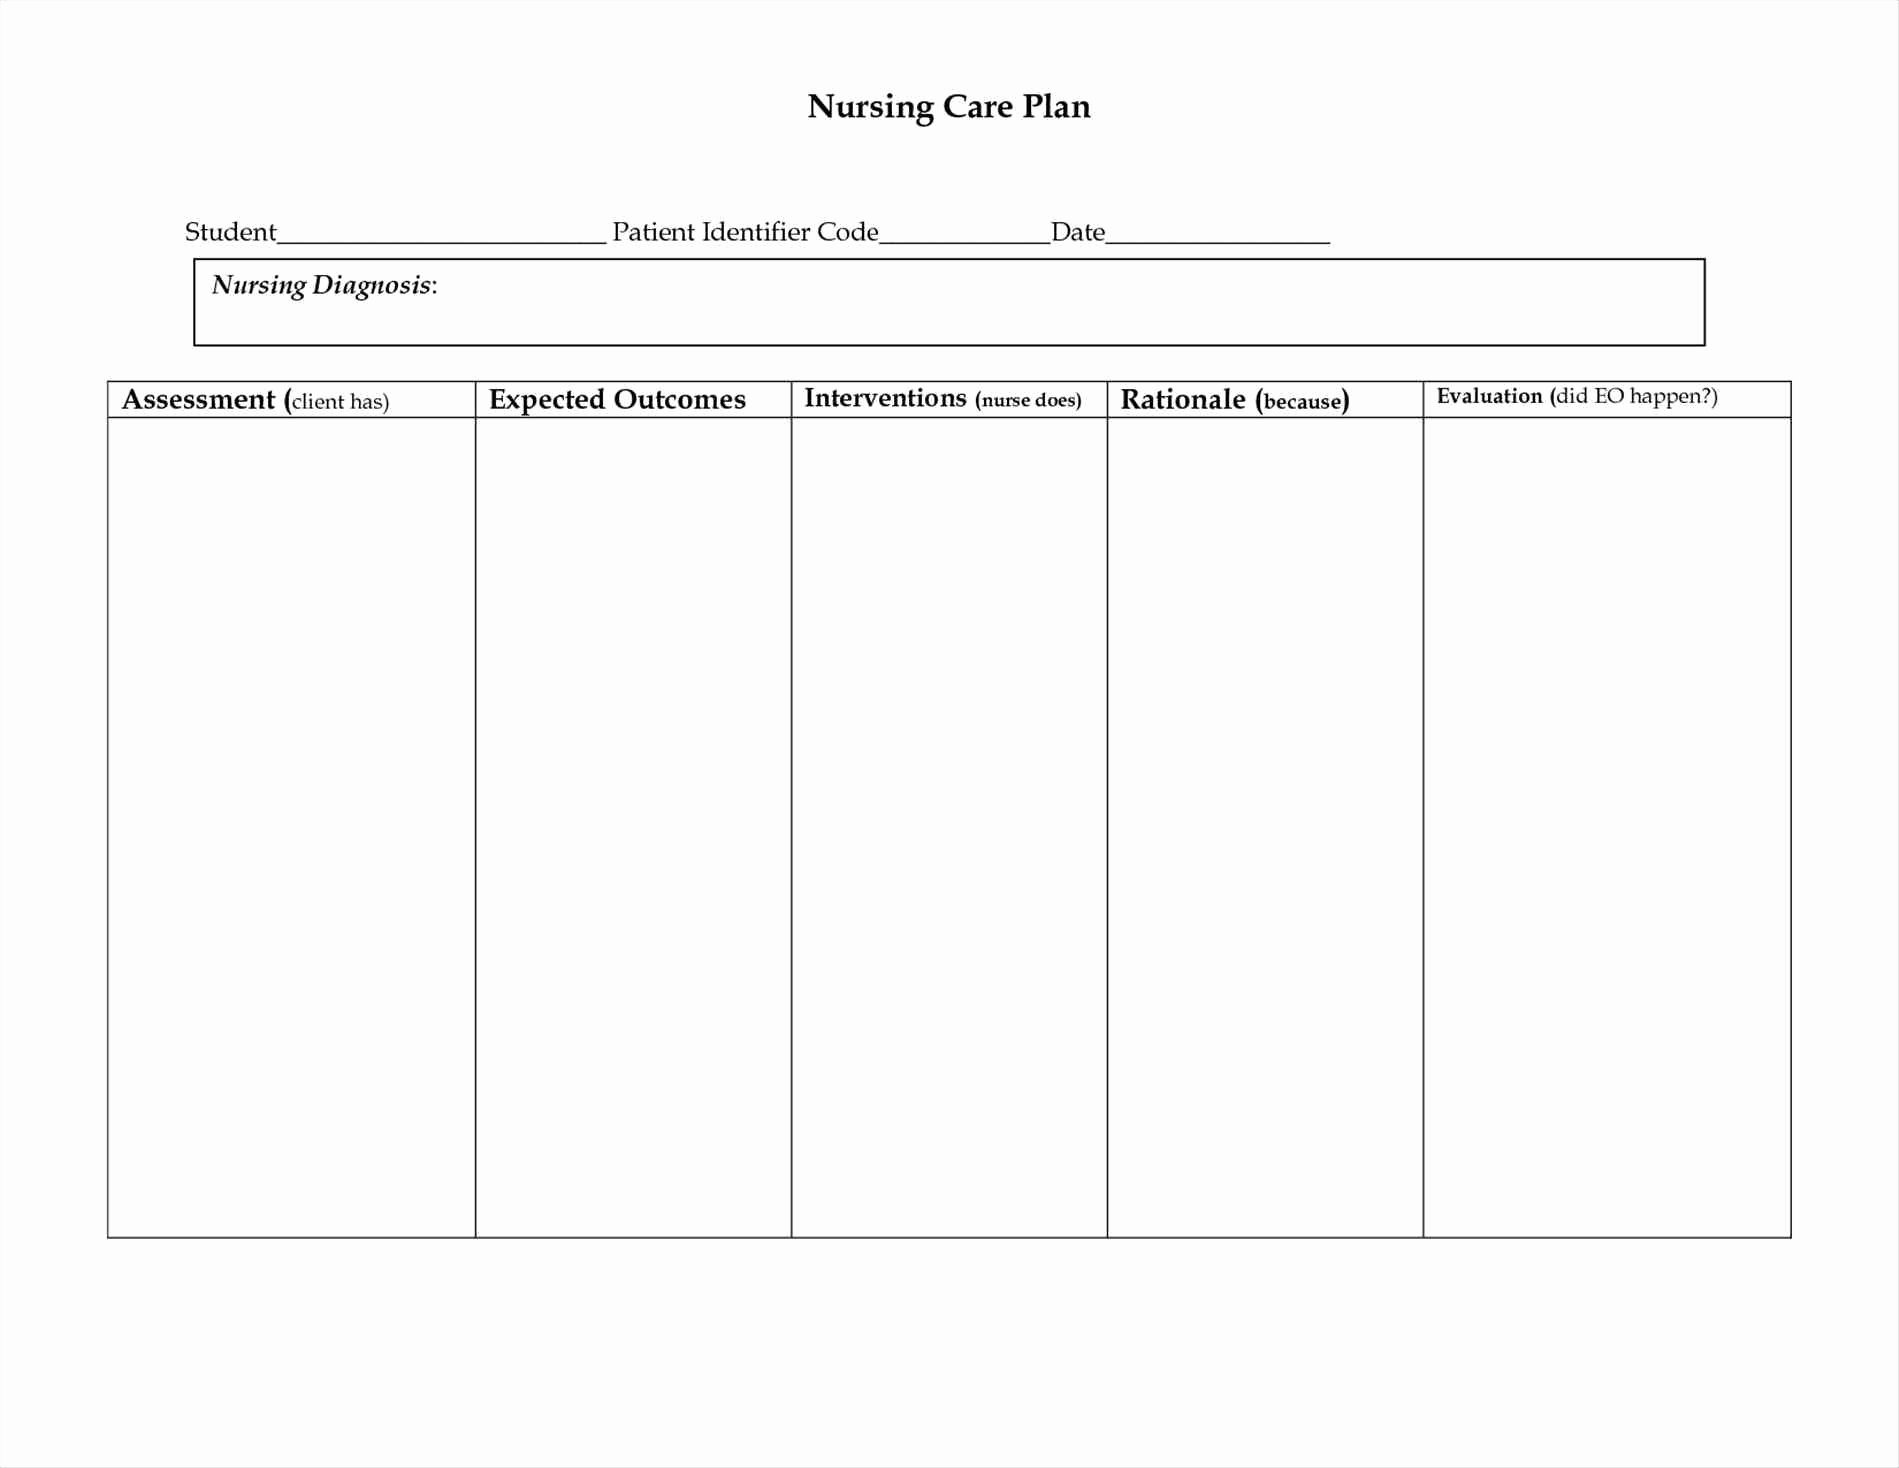 Patient Care Plan Template Fresh Nursing Care Plan Patient Care Plan Template solutionet